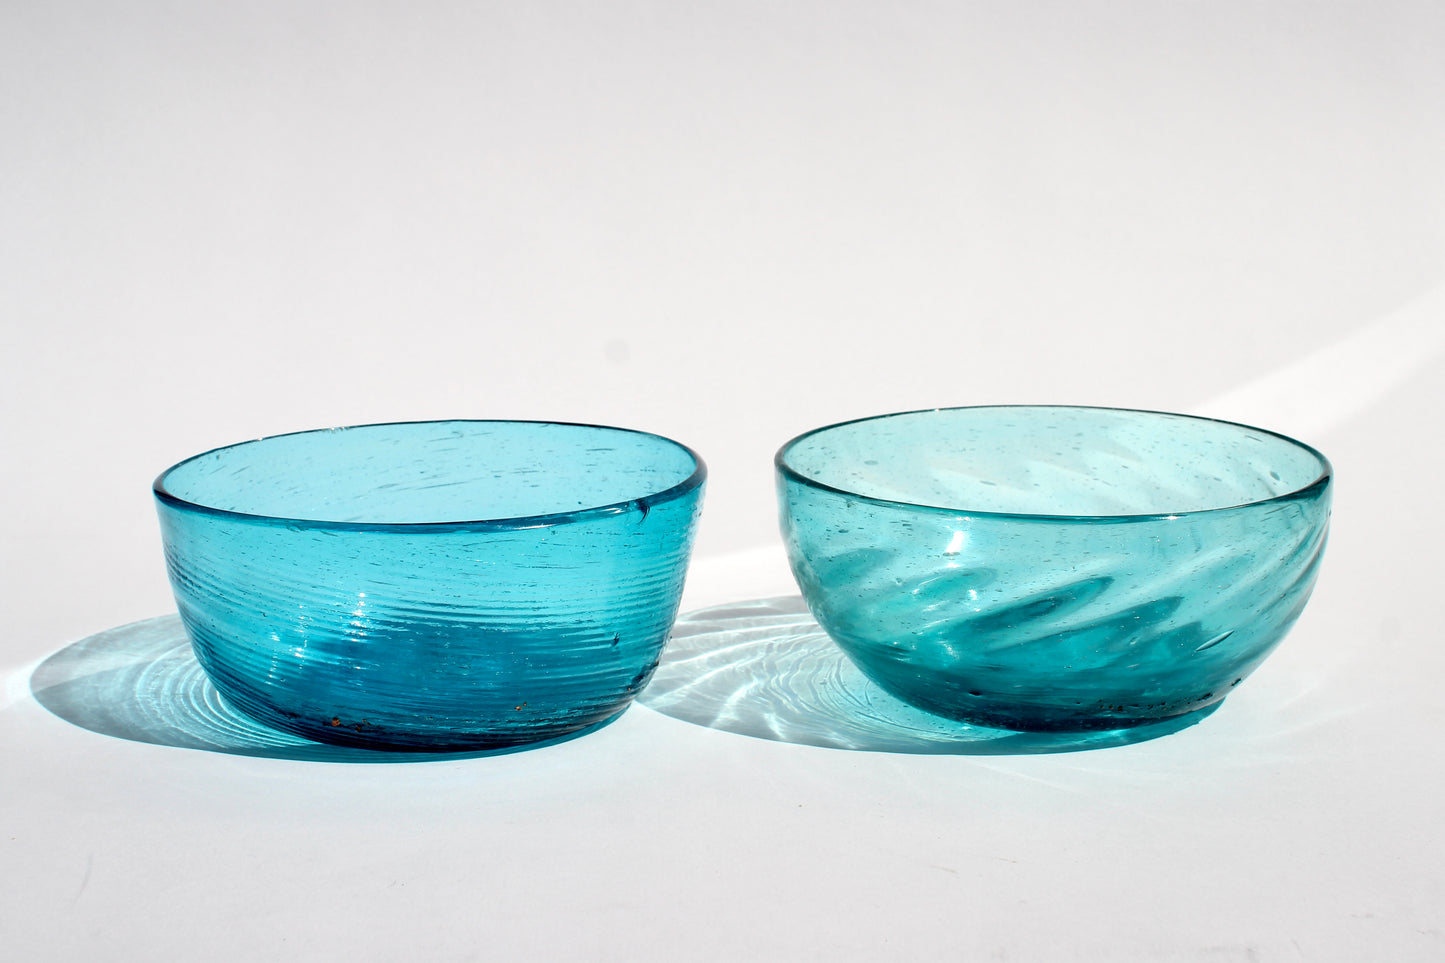 handblown aqua glass bowls